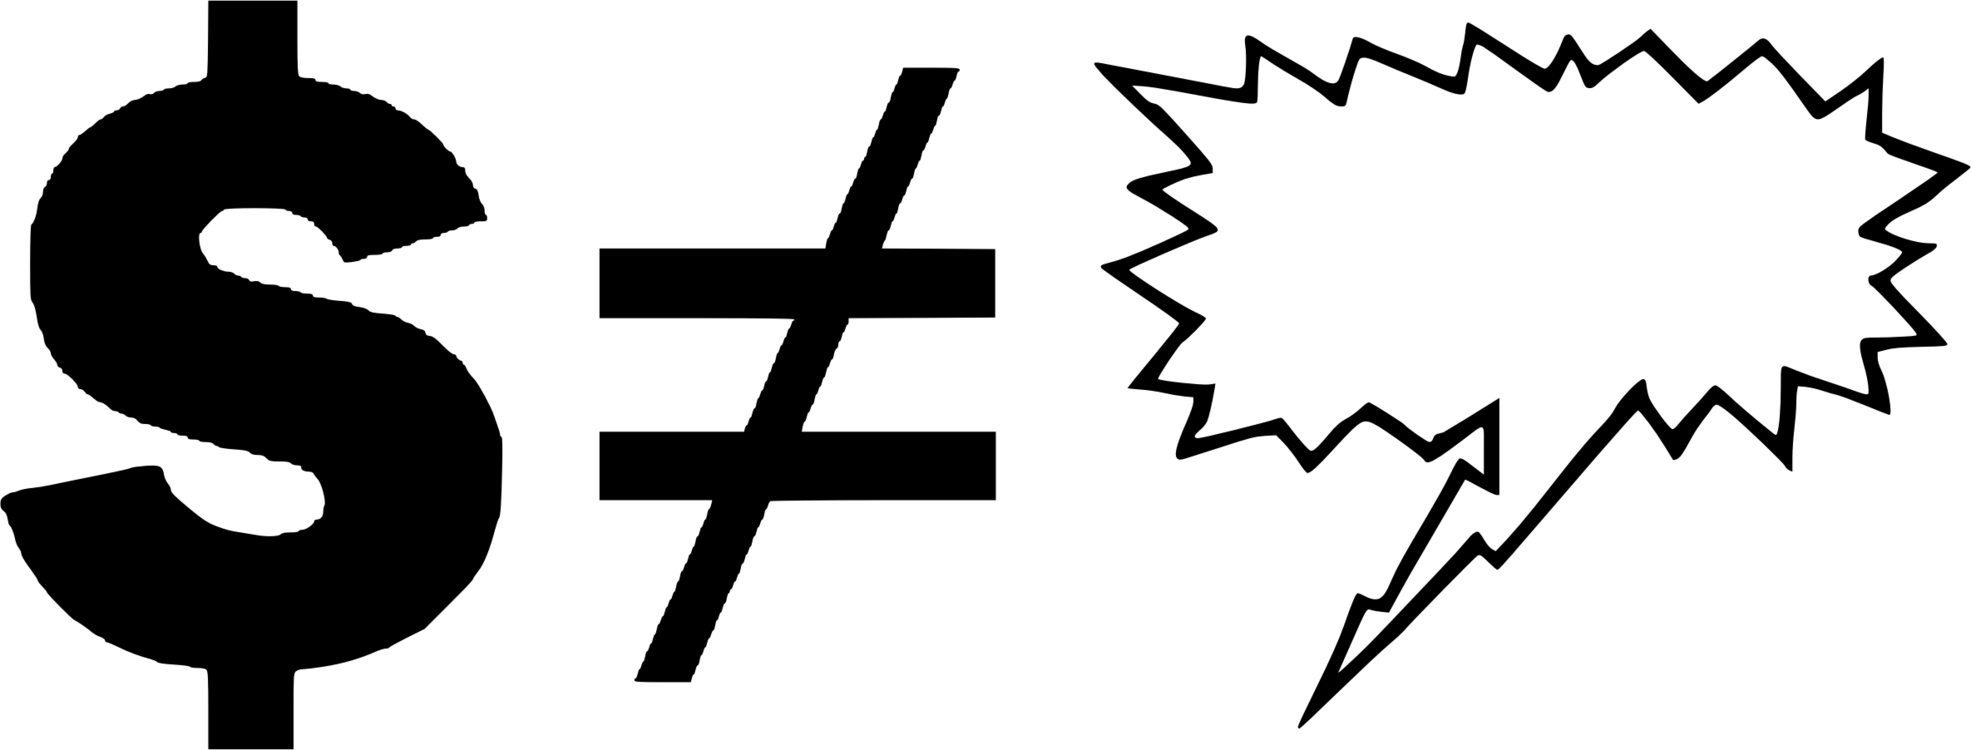 Silhouette,Logo,Text